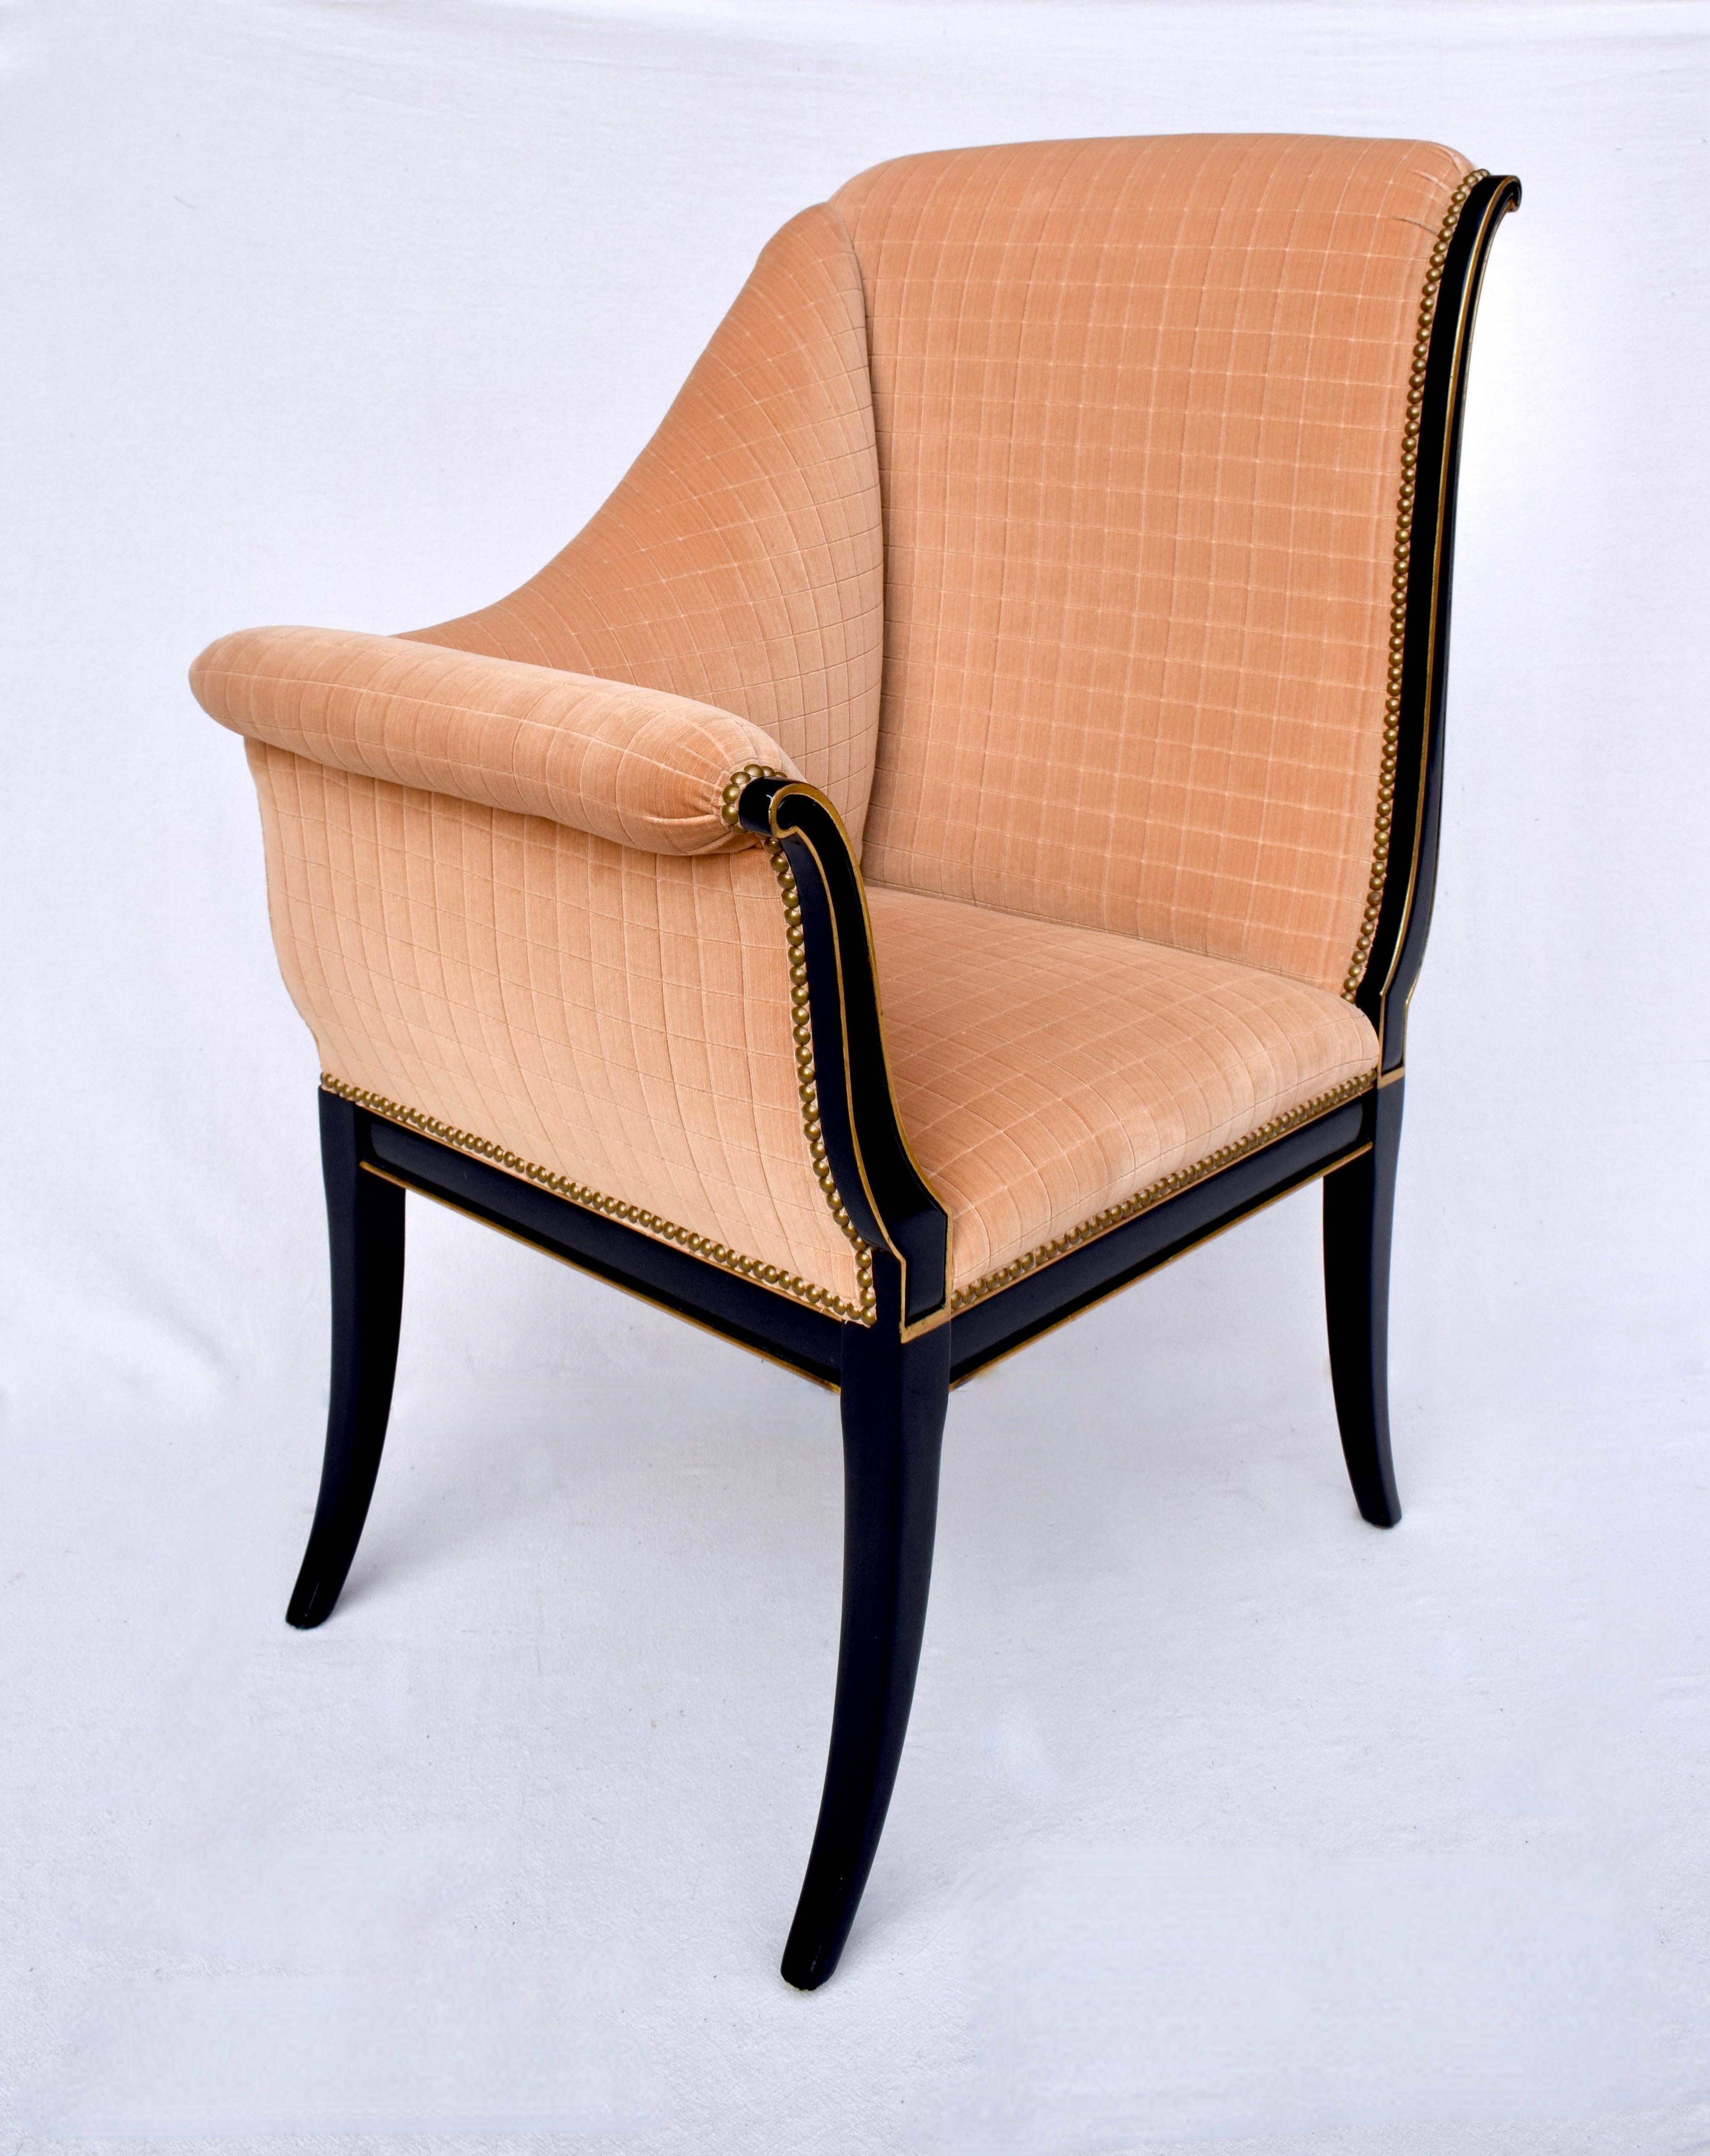 Karges Furniture Parler Deux Right & Left Regency Chairs For Sale 5